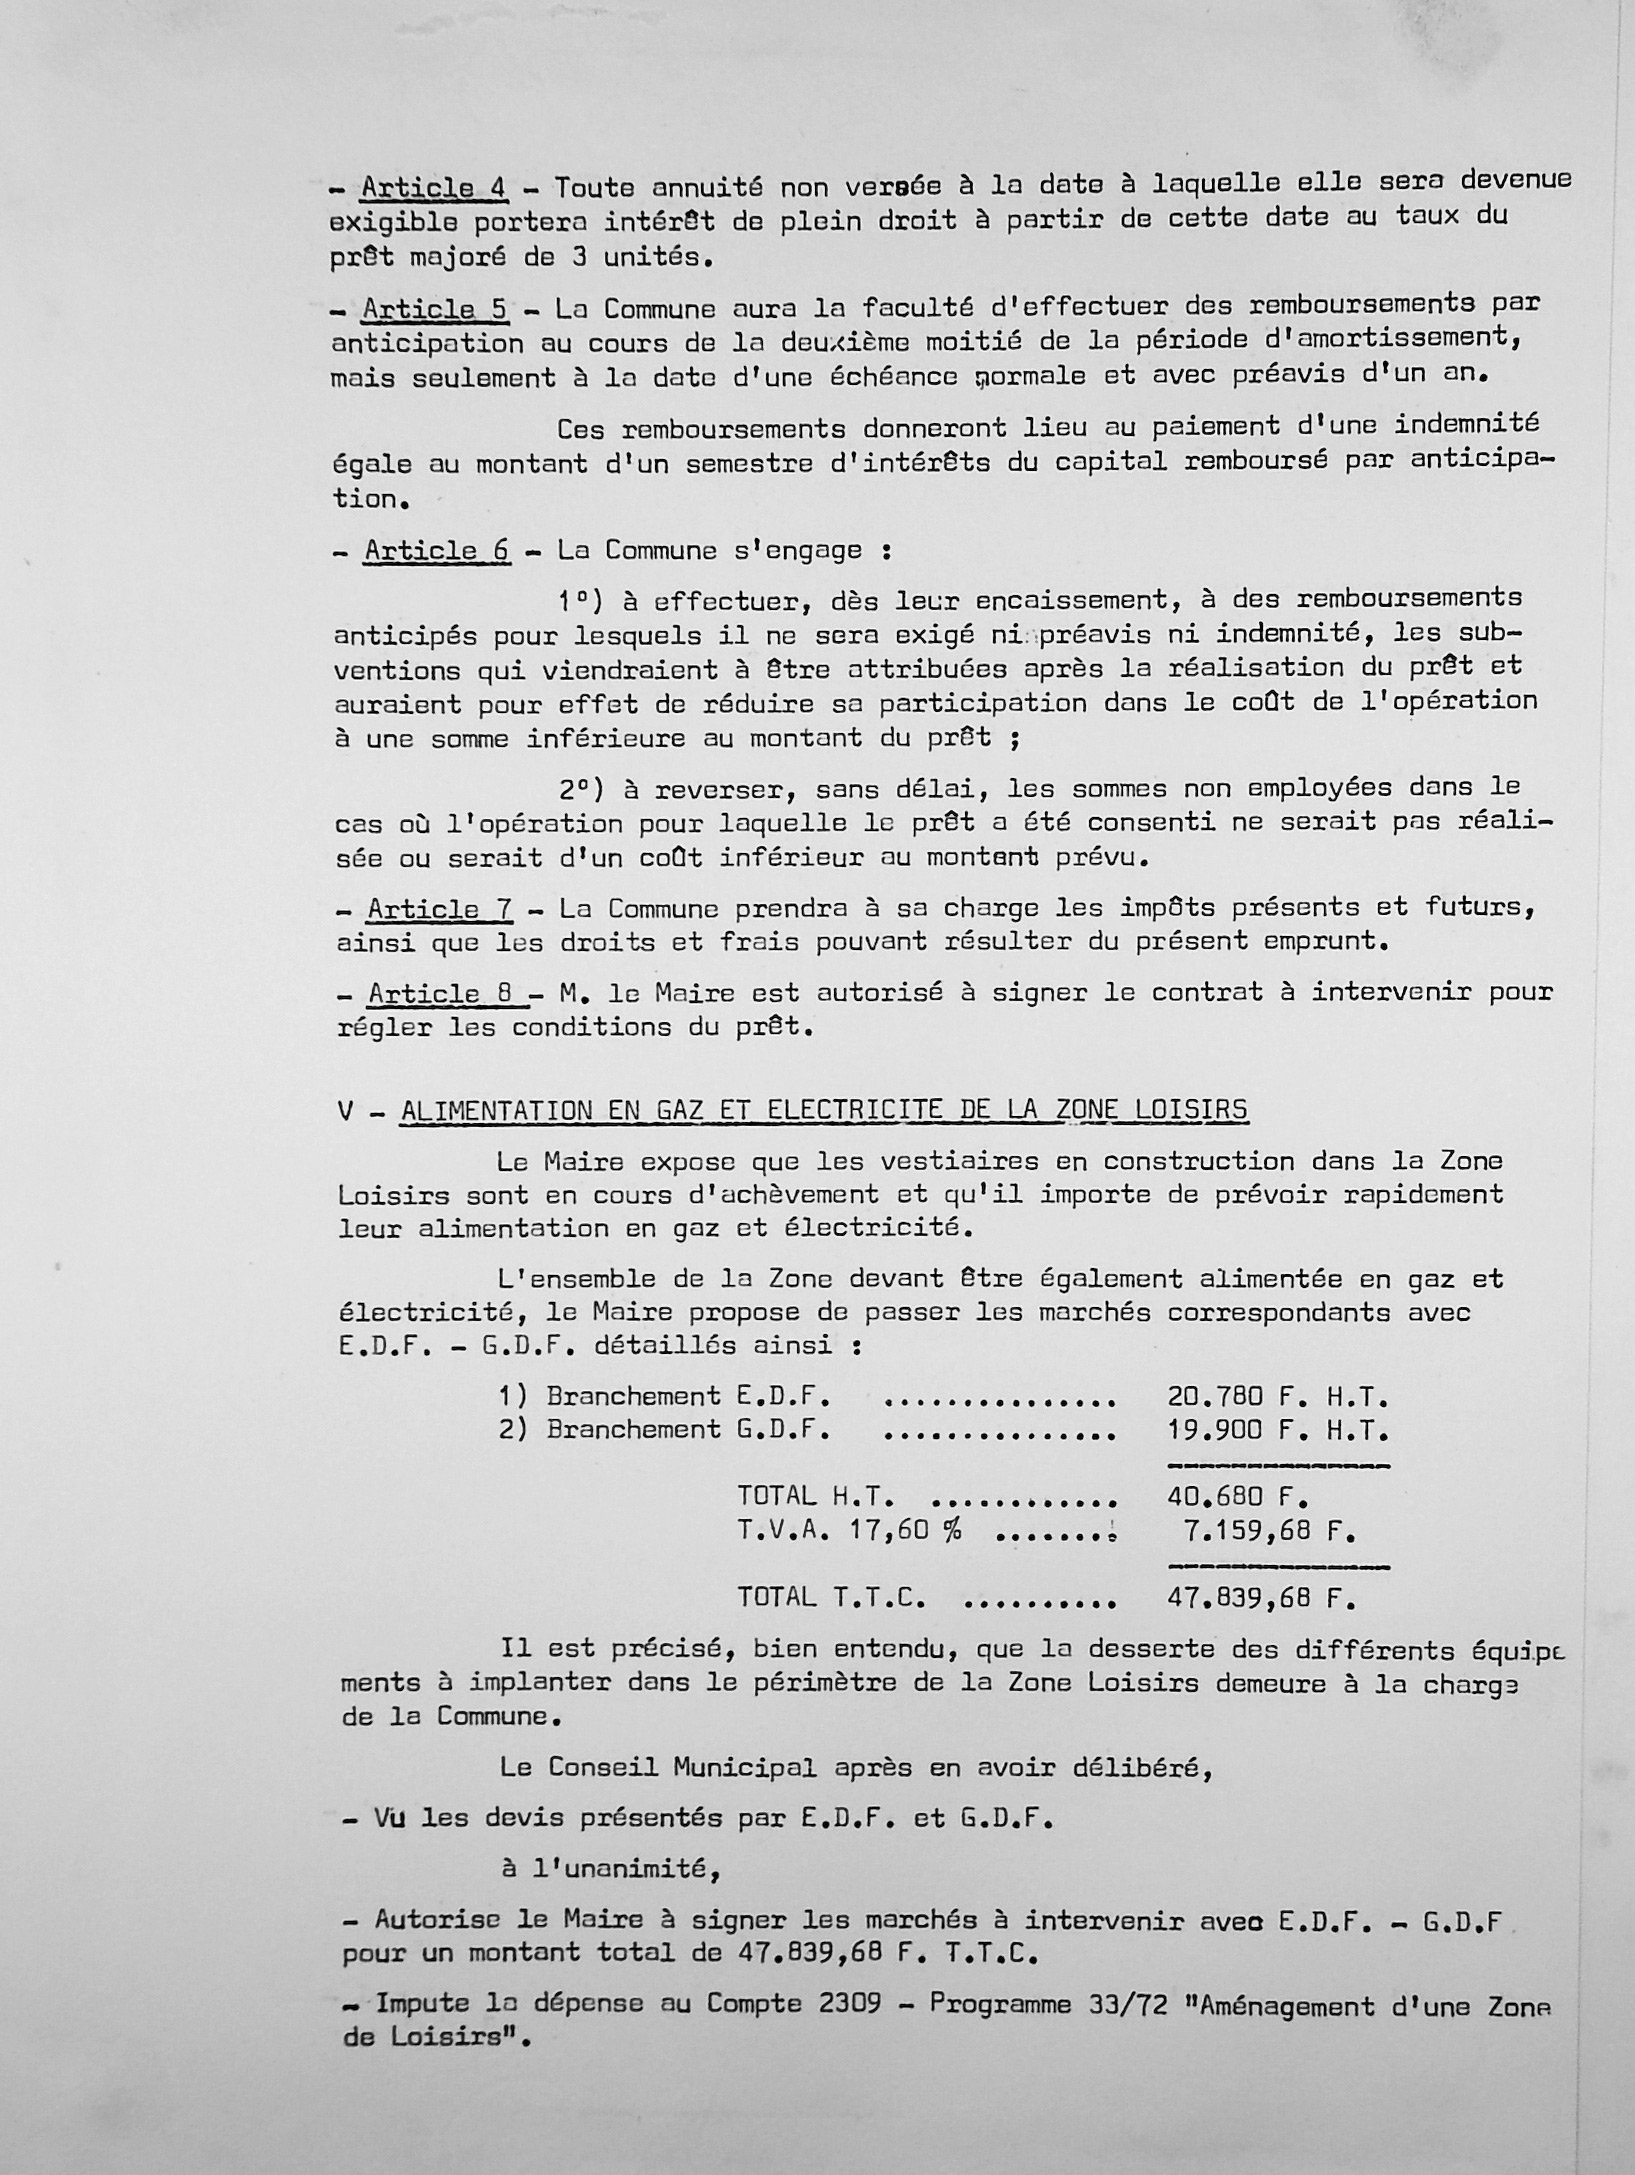 Feuillet_021A-1974-1977.jpg